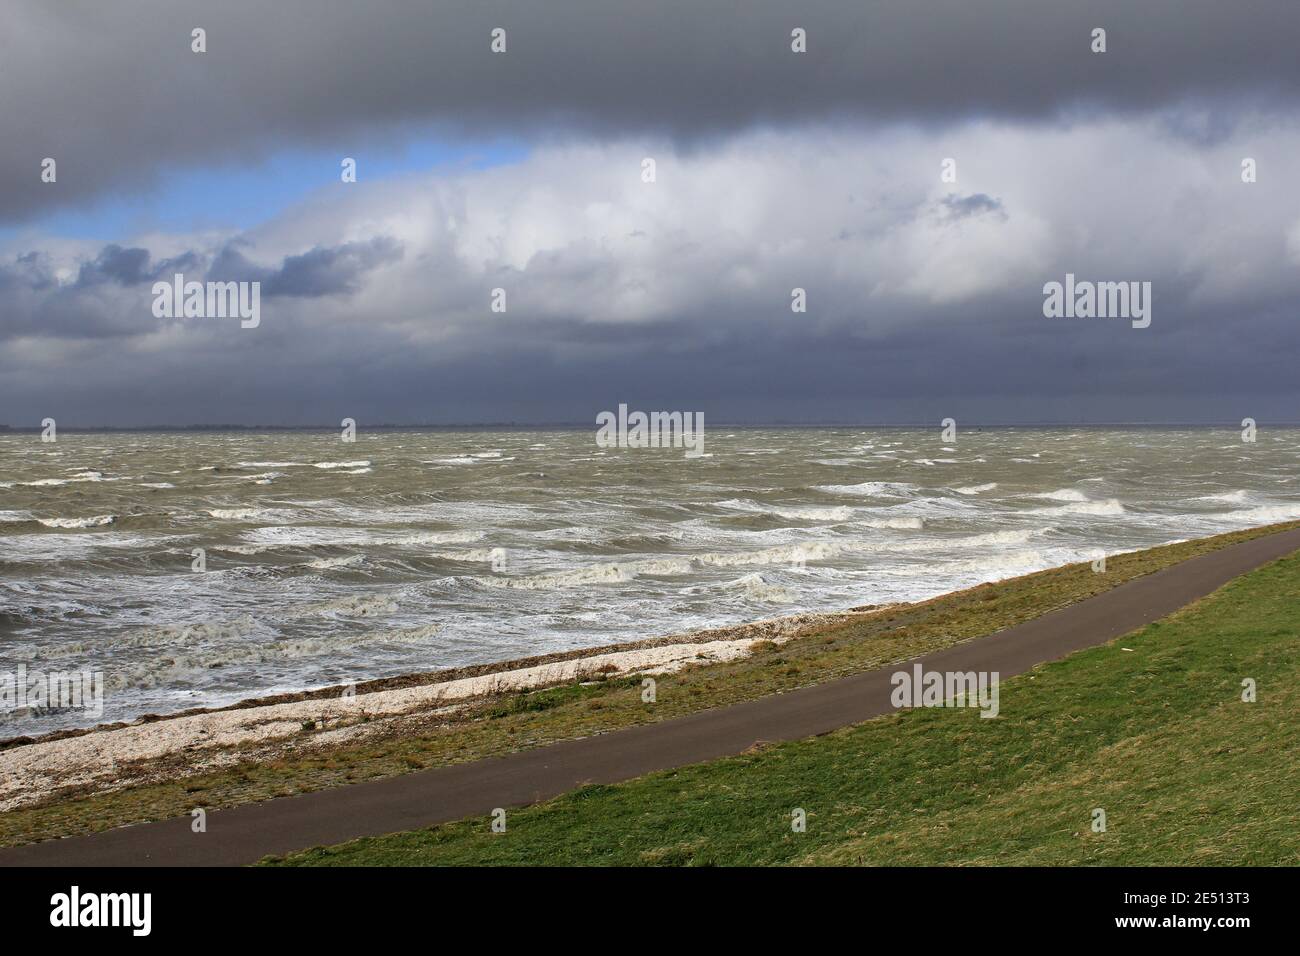 grandi onde in acque selvagge pesanti del mare di westerschelde in zelanda, olanda e grandi nuvole in un cielo minaccioso durante la tempesta in primavera Foto Stock